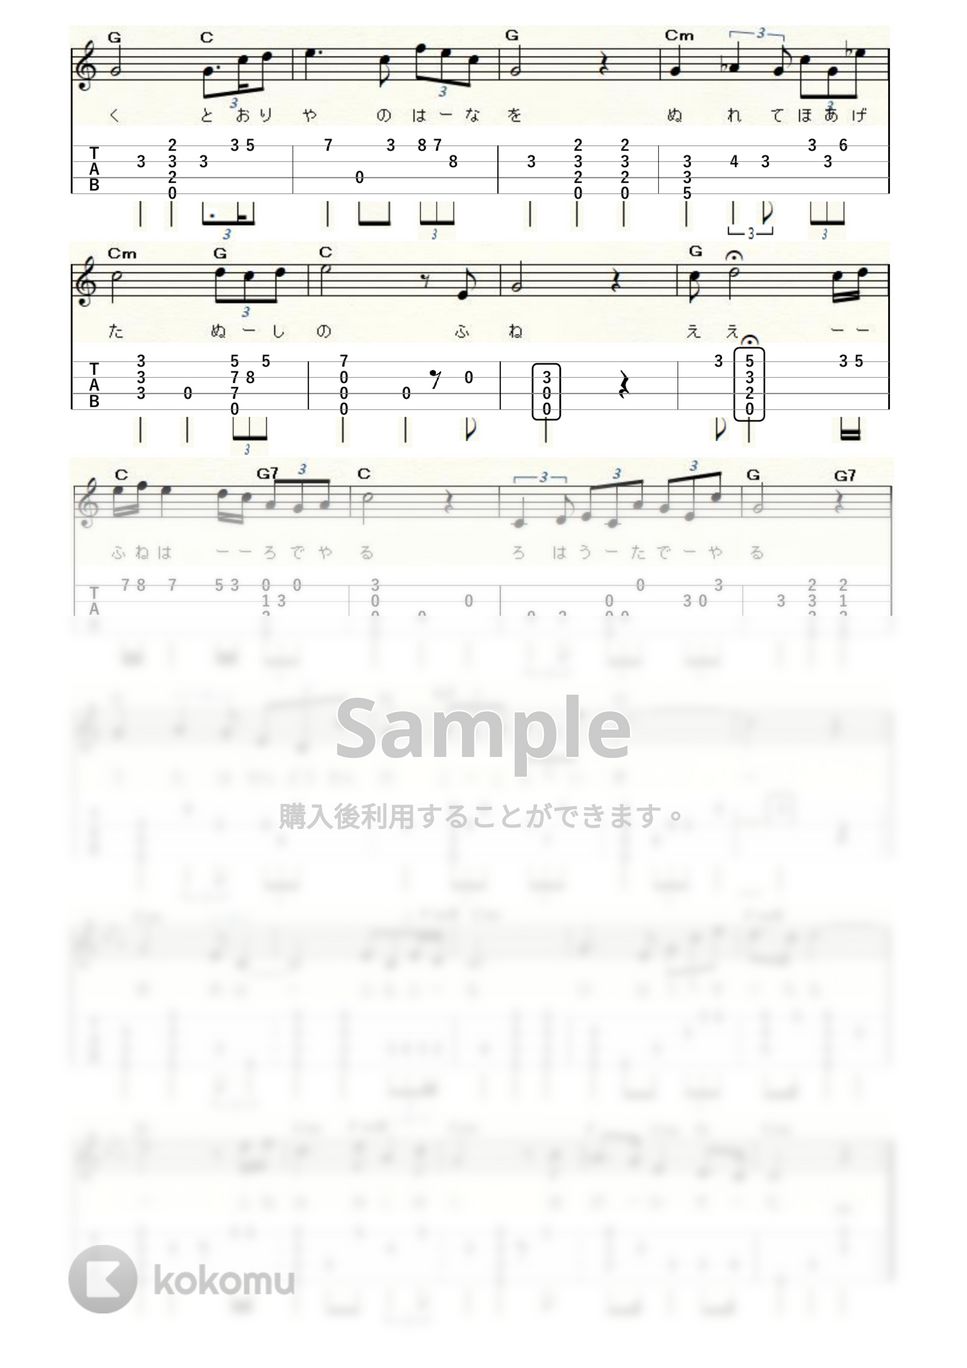 北原白秋 - 城ヶ島の雨 (ｳｸﾚﾚｿﾛ / Low-G / 中級) by ukulelepapa